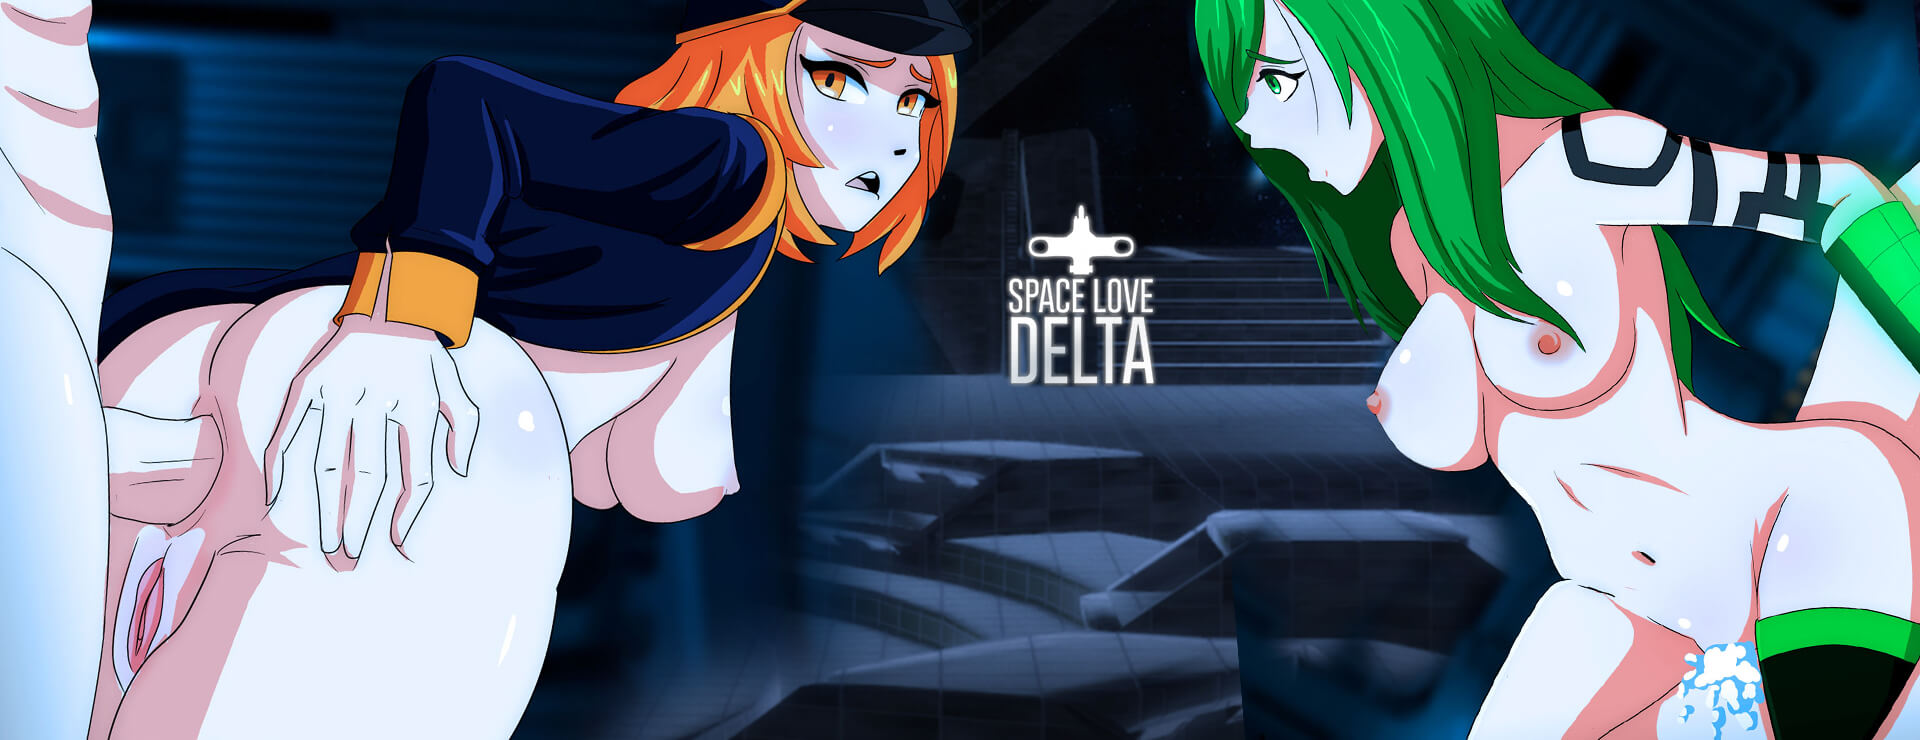 Space Love Delta - ビジュアルノベル ゲーム